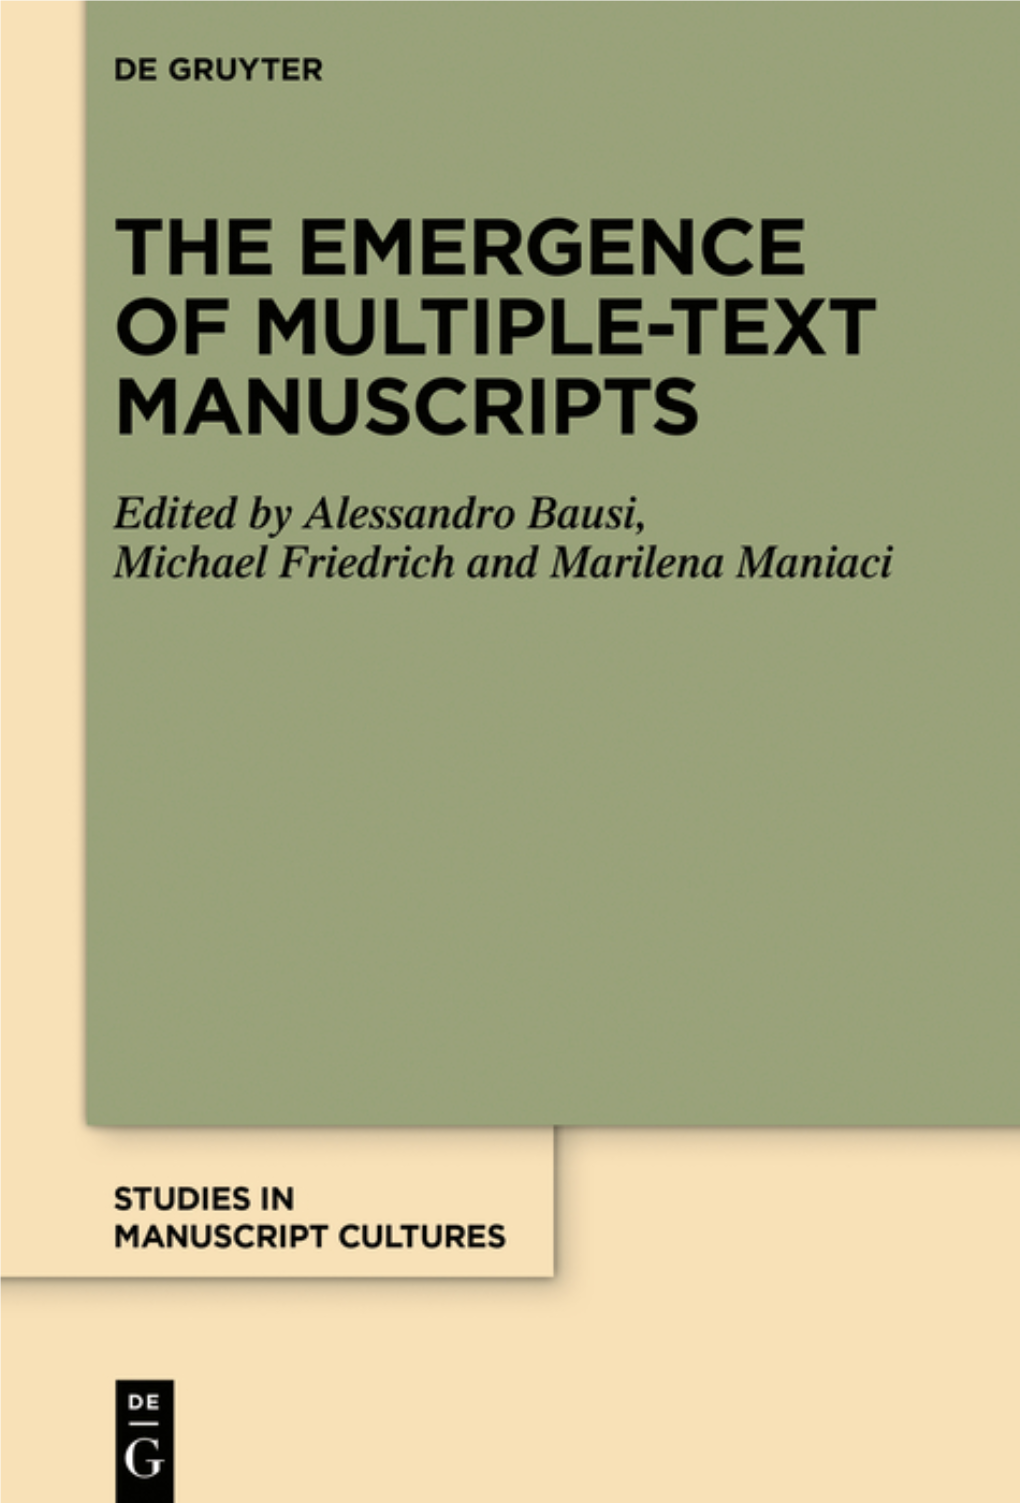 Studies in Manuscript Cultures